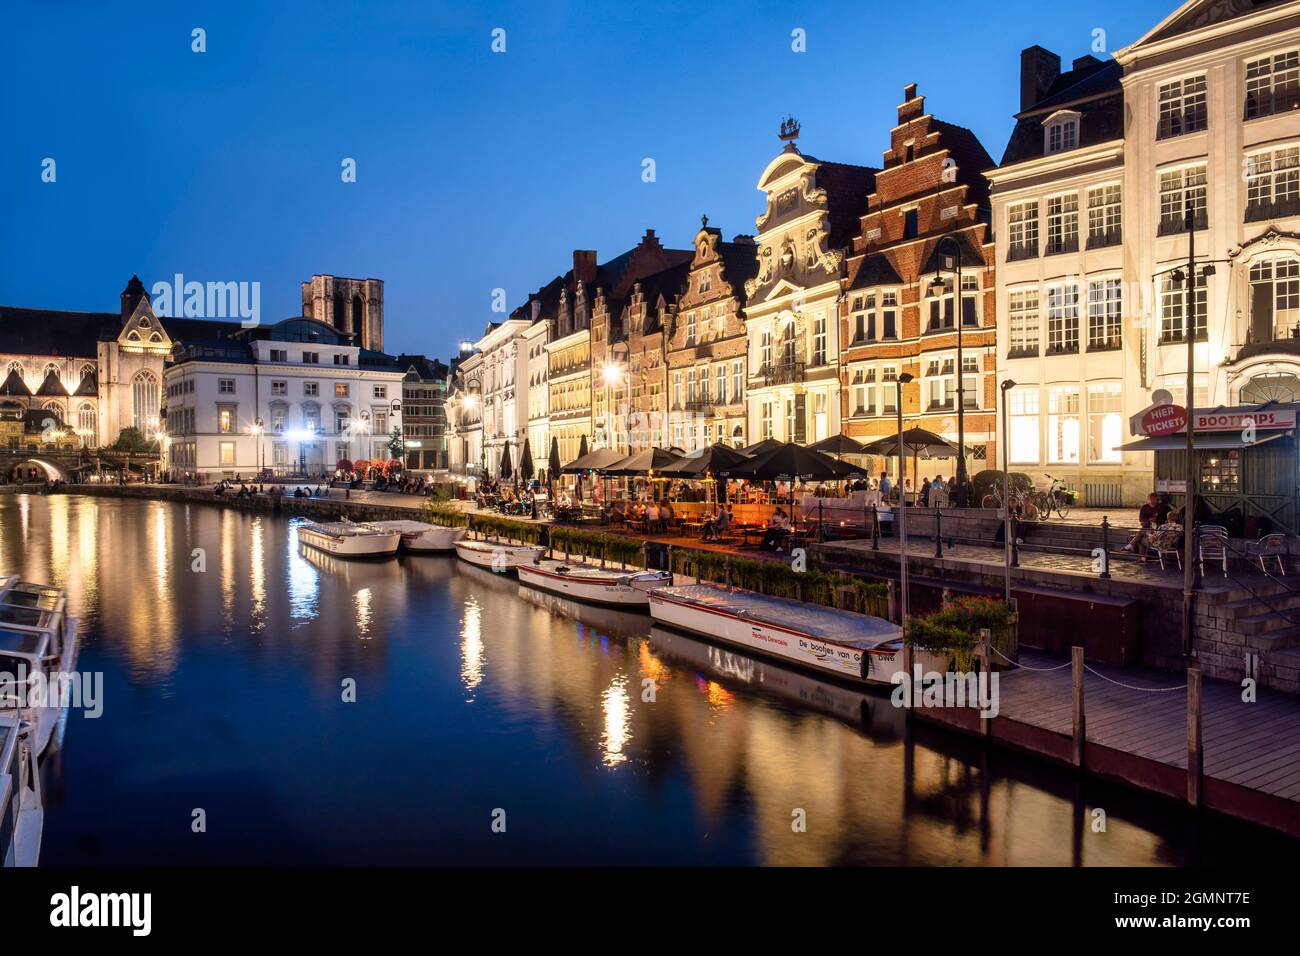 Historisches Zentrum von Gent am Abend, mittelalterliche Häuser, Korenlei Ufer Promenade, Ausflugsboote, Gent, Flandern, Belgien, Europa Stockfoto